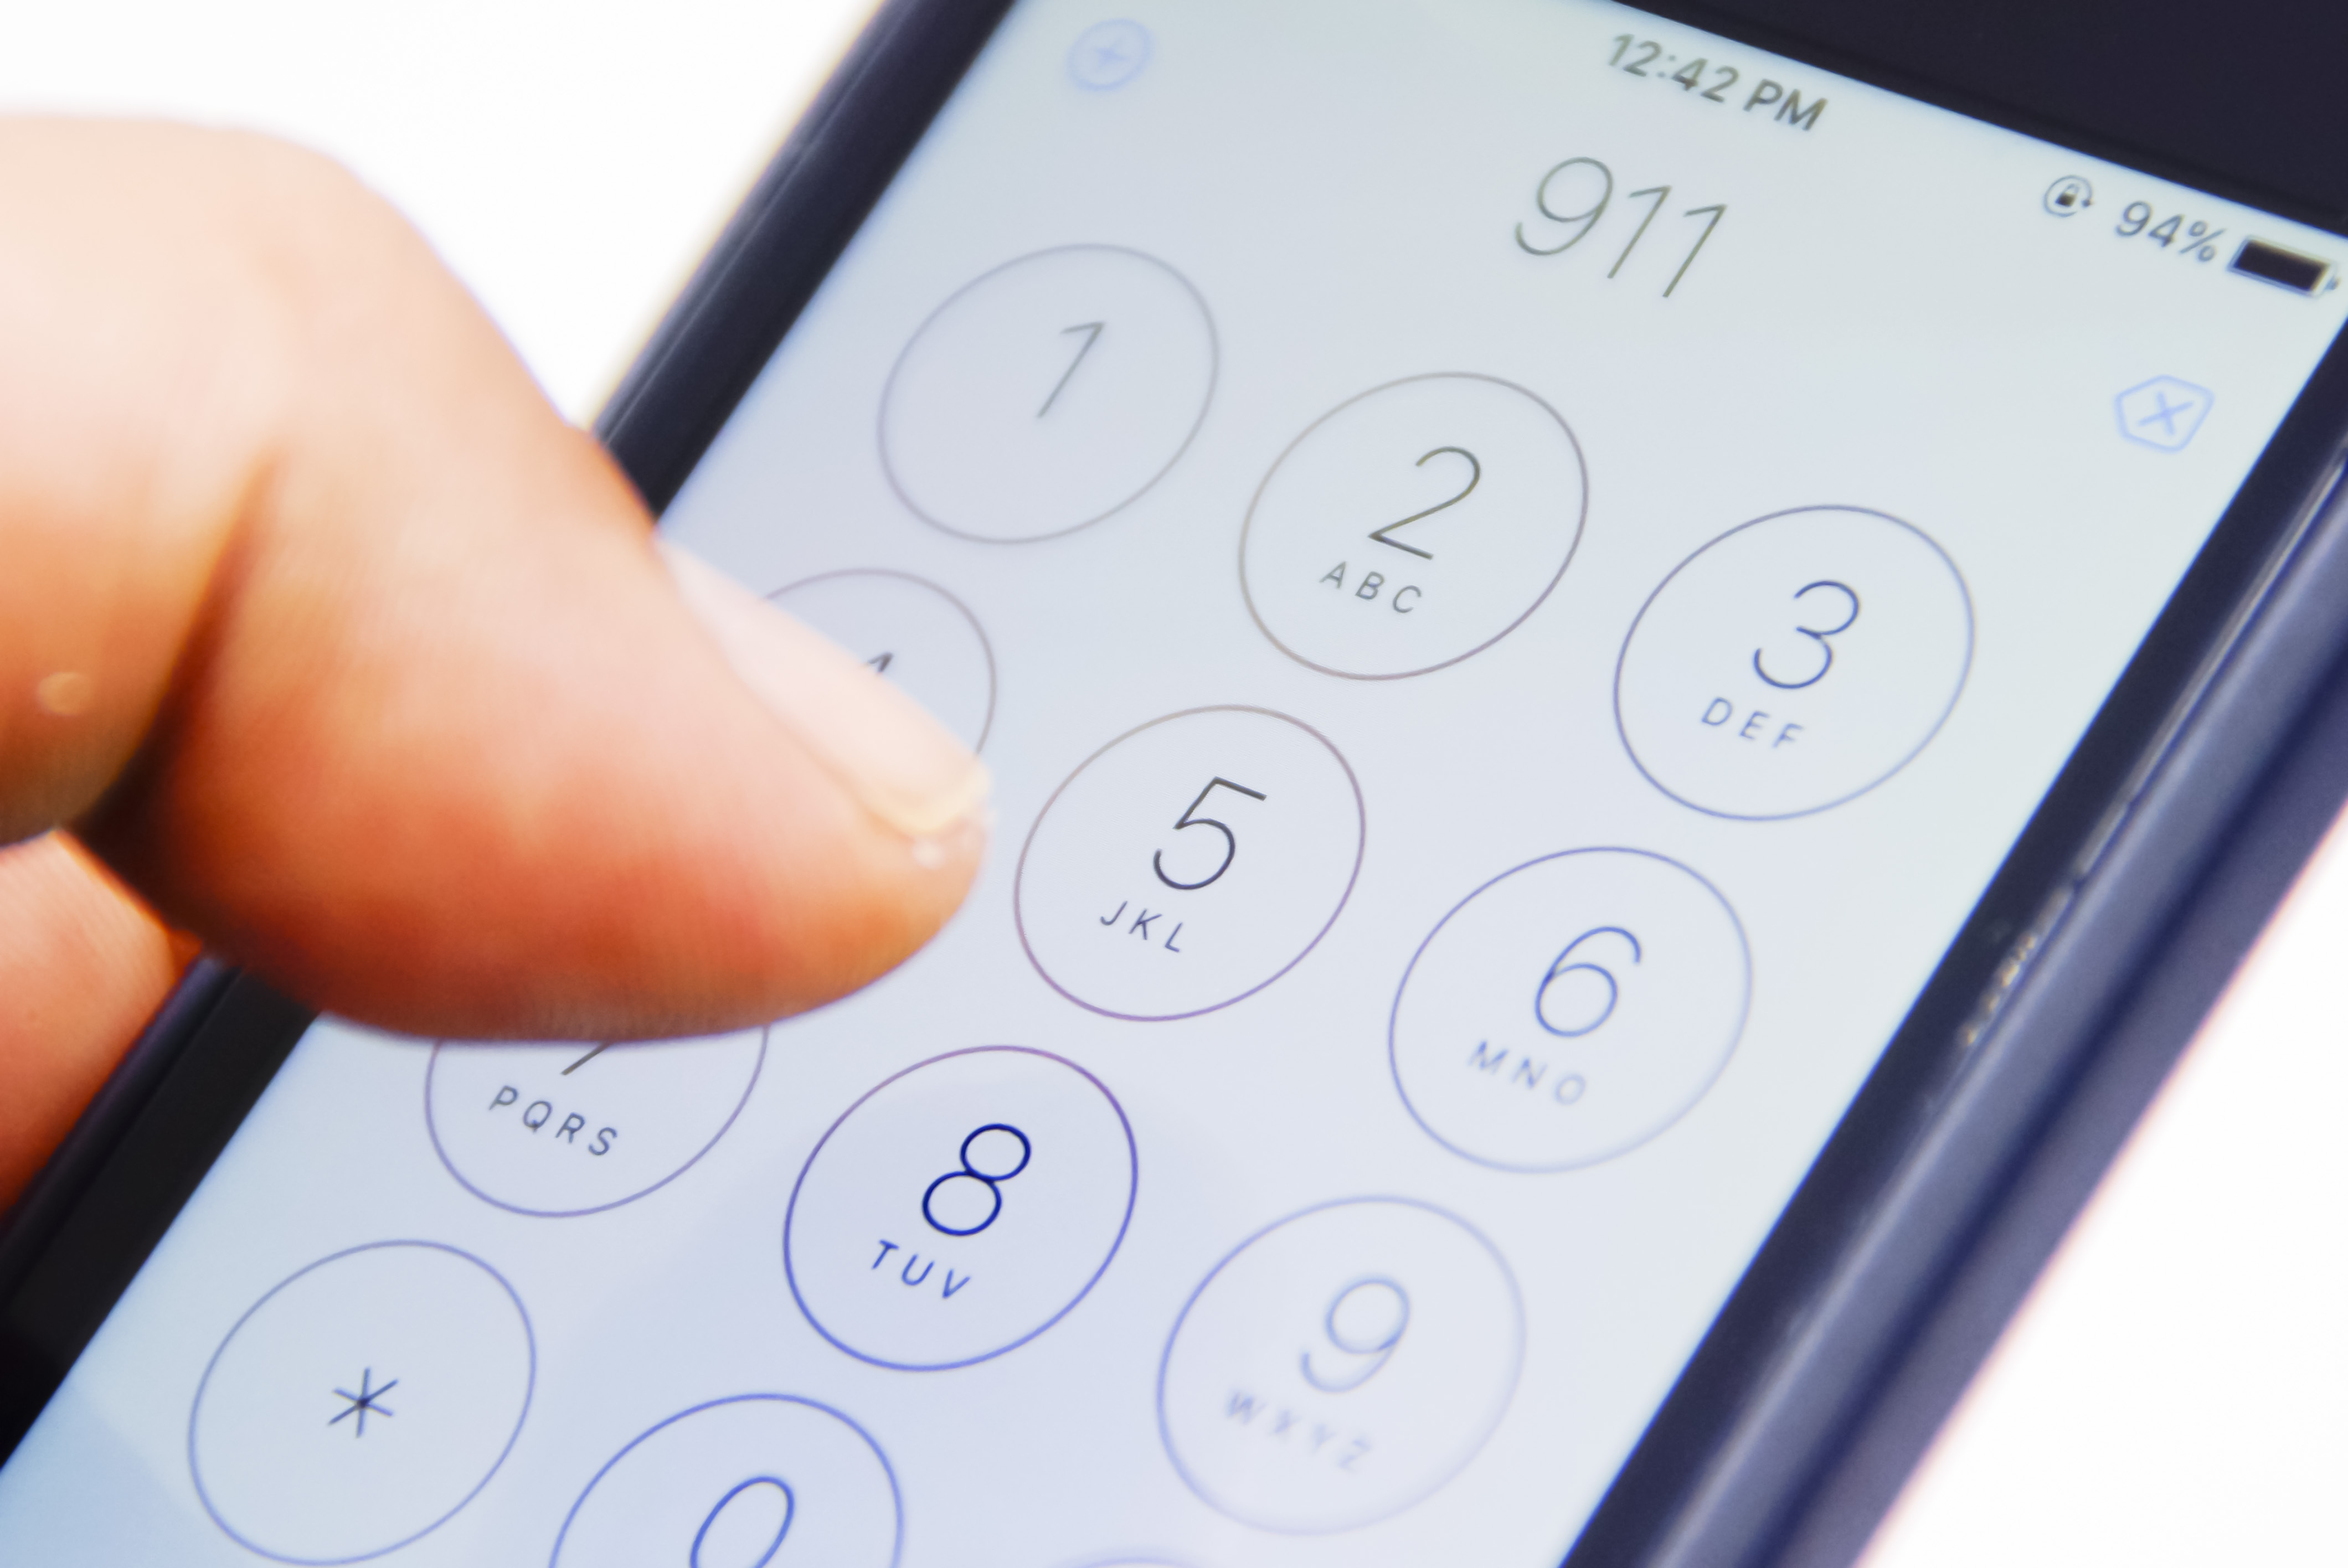 Une personne composant le 911 sur son téléphone | Source : Shutterstock